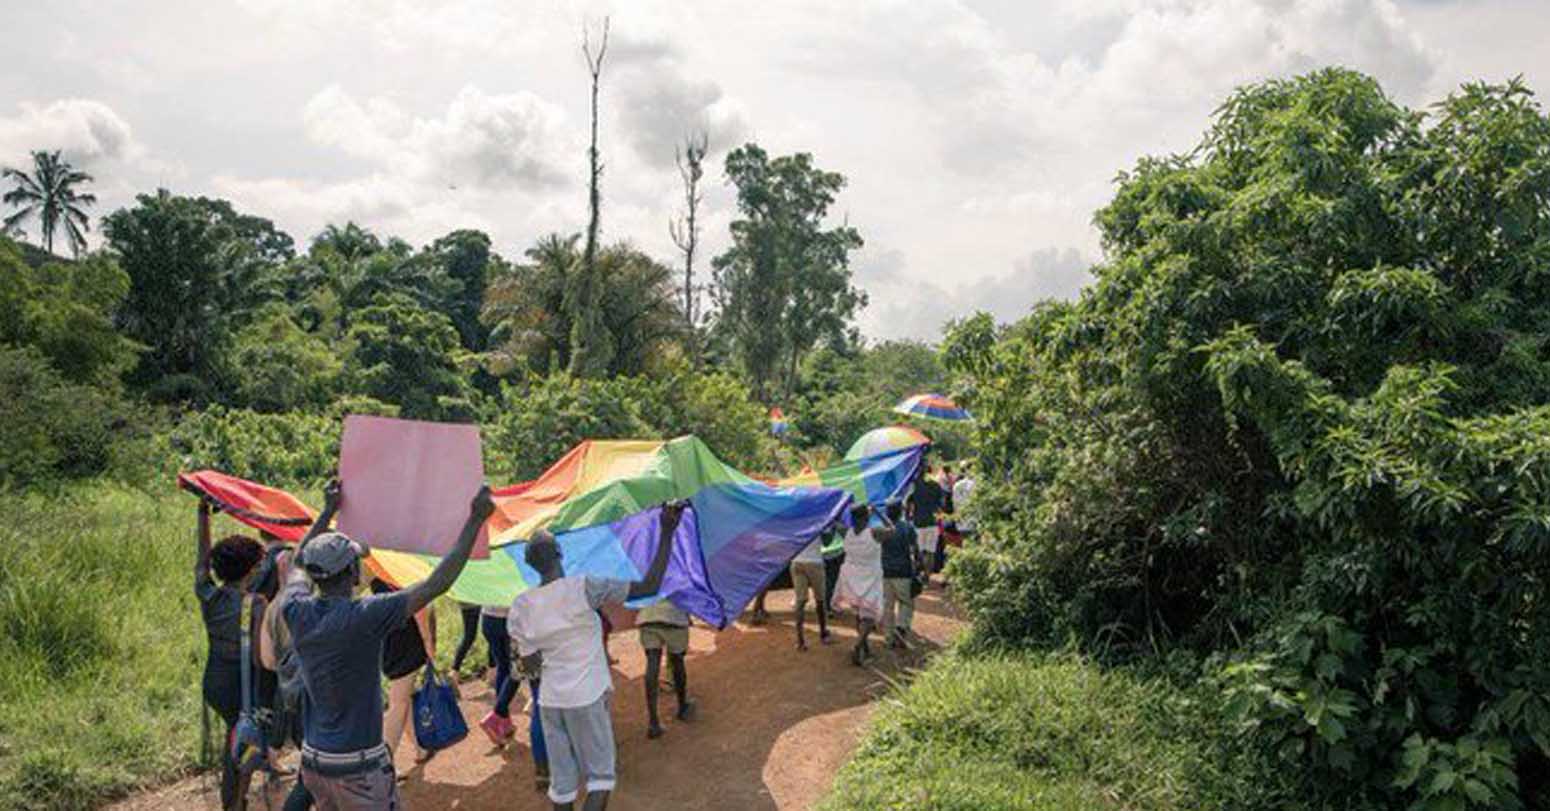 More LGBTQ+ People Seek To Flee Uganda As Anti-Gay Sentiment Grows